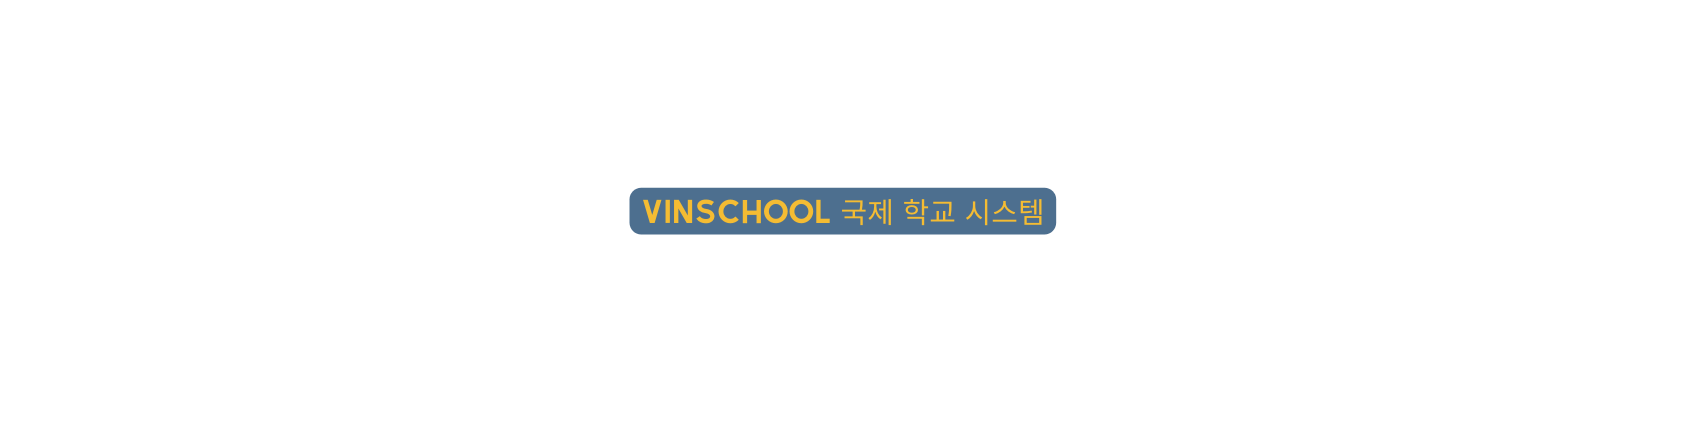 Vinschool 국제 학교 시스템